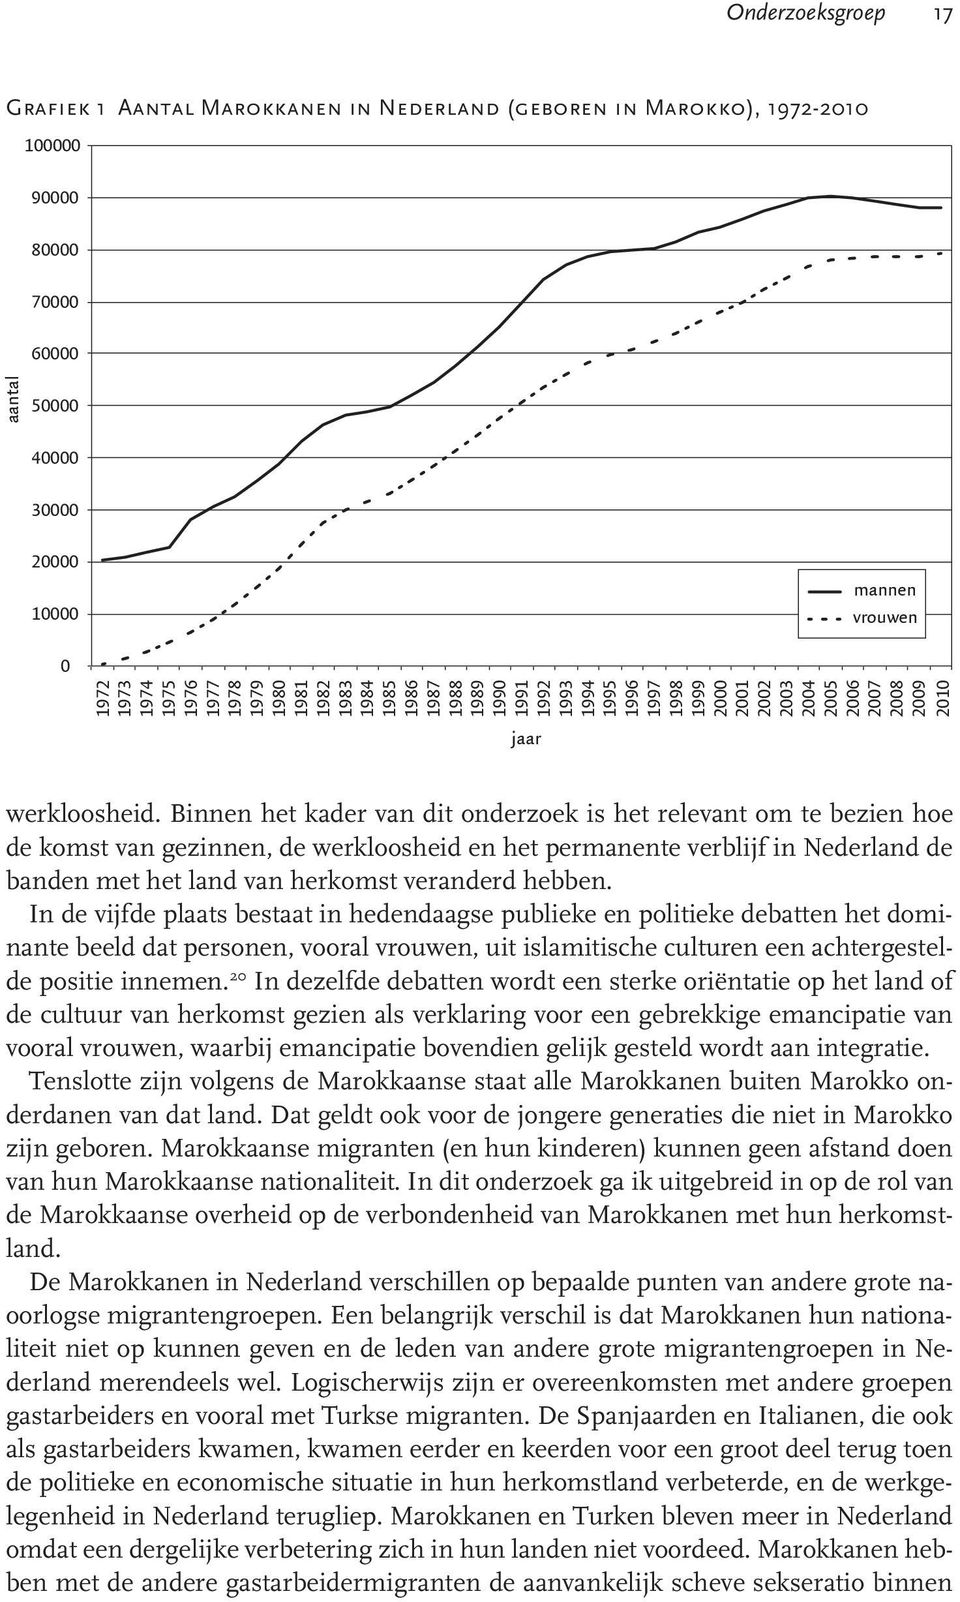 Binnen het kader van dit onderzoek is het relevant om te bezien hoe de komst van gezinnen, de werkloosheid en het permanente verblijf in Nederland de banden met het land van herkomst veranderd hebben.